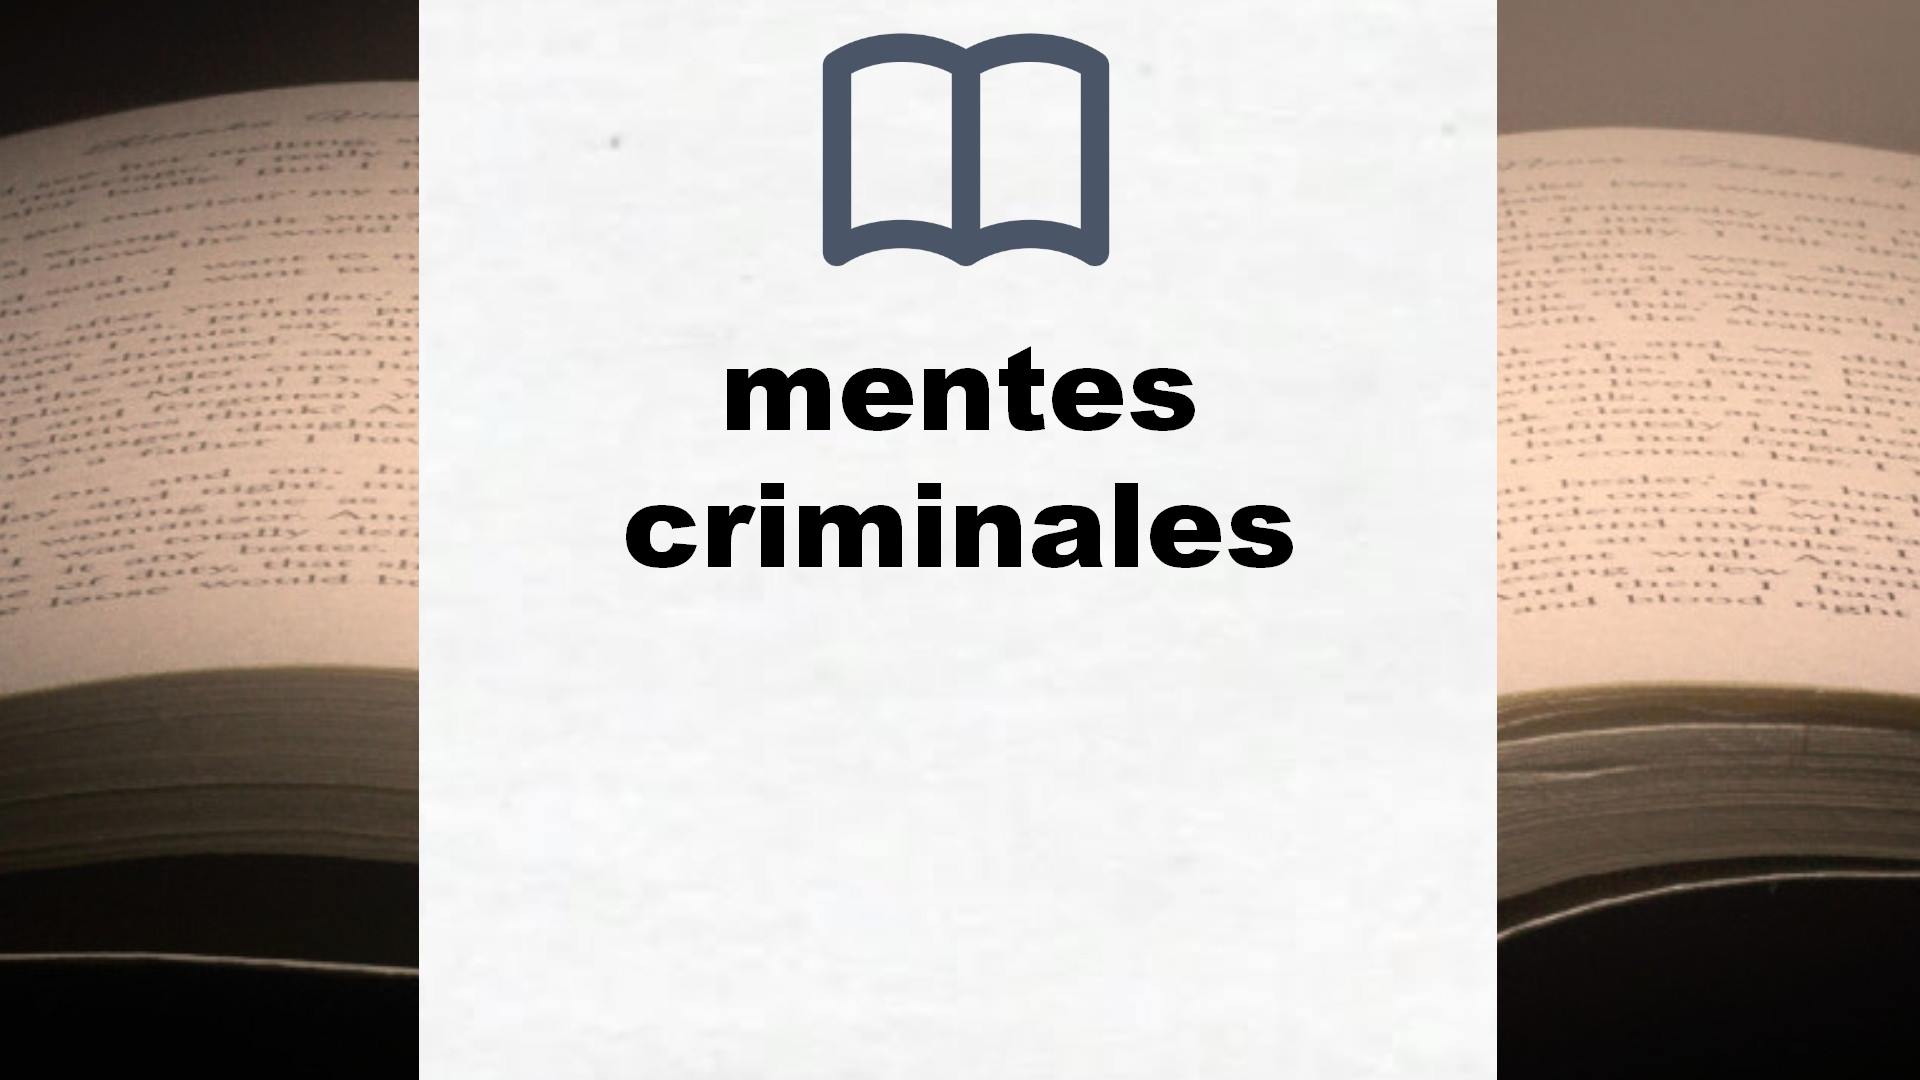 Libros sobre mentes criminales